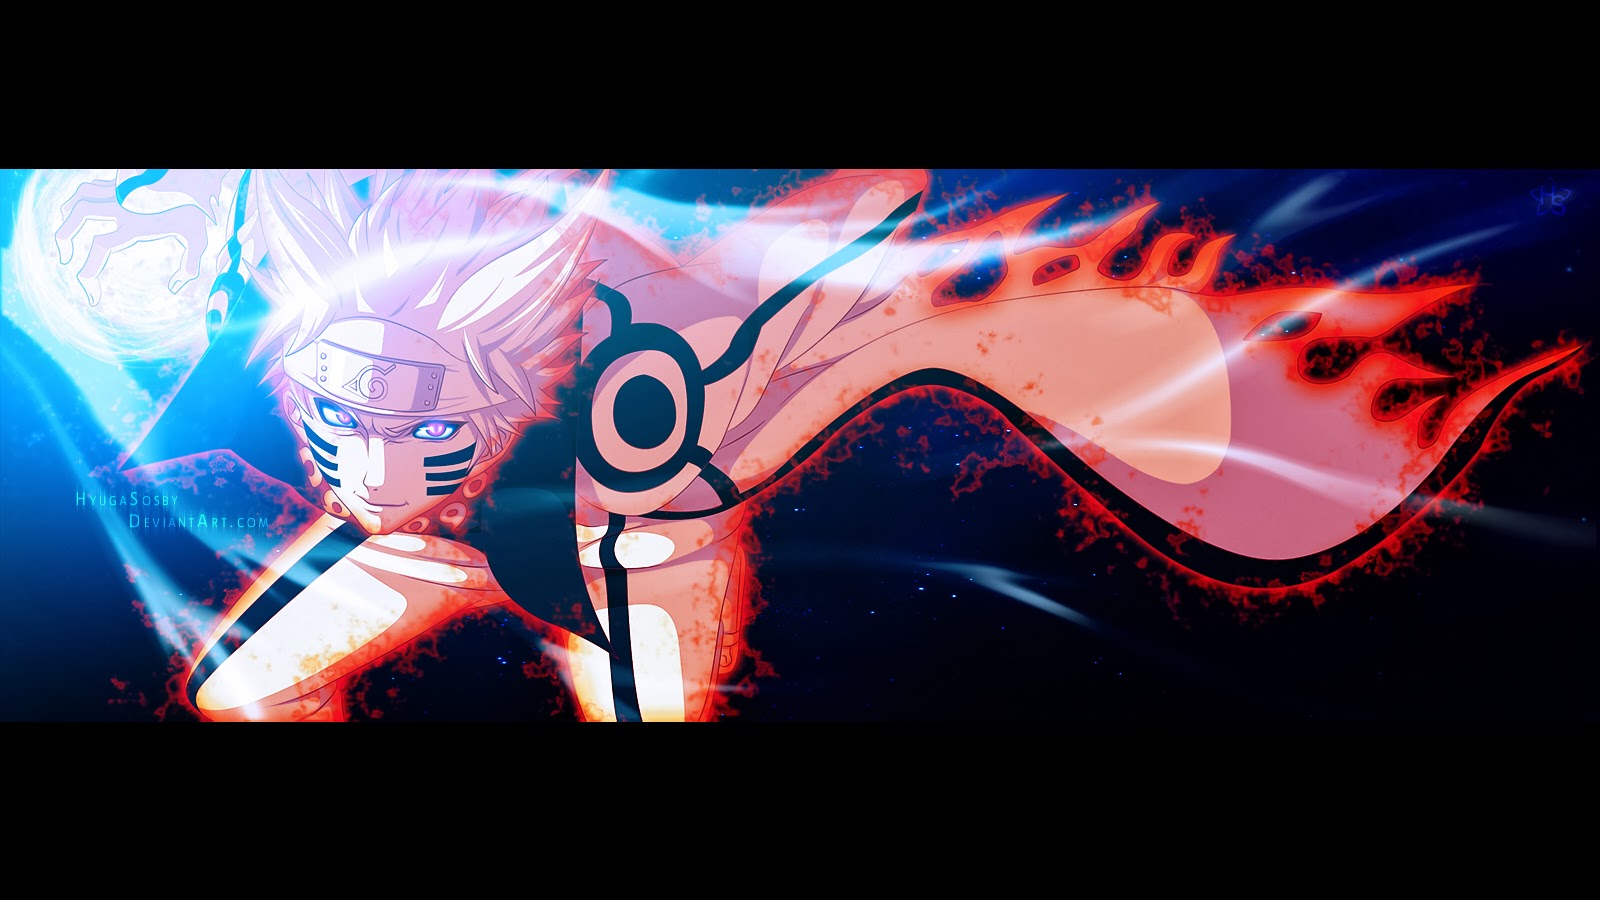 Kết hợp sức mạnh của Rasengan, Kyuubi Cloak và Sage Mode, ảnh nền Naruto Rasengan Kyuubi Cloak Sage Mode Wallpaper sẽ khiến bạn trở nên mạnh mẽ hơn bao giờ hết. Xem ngay để cảm nhận sự thăng hoa của Naruto!